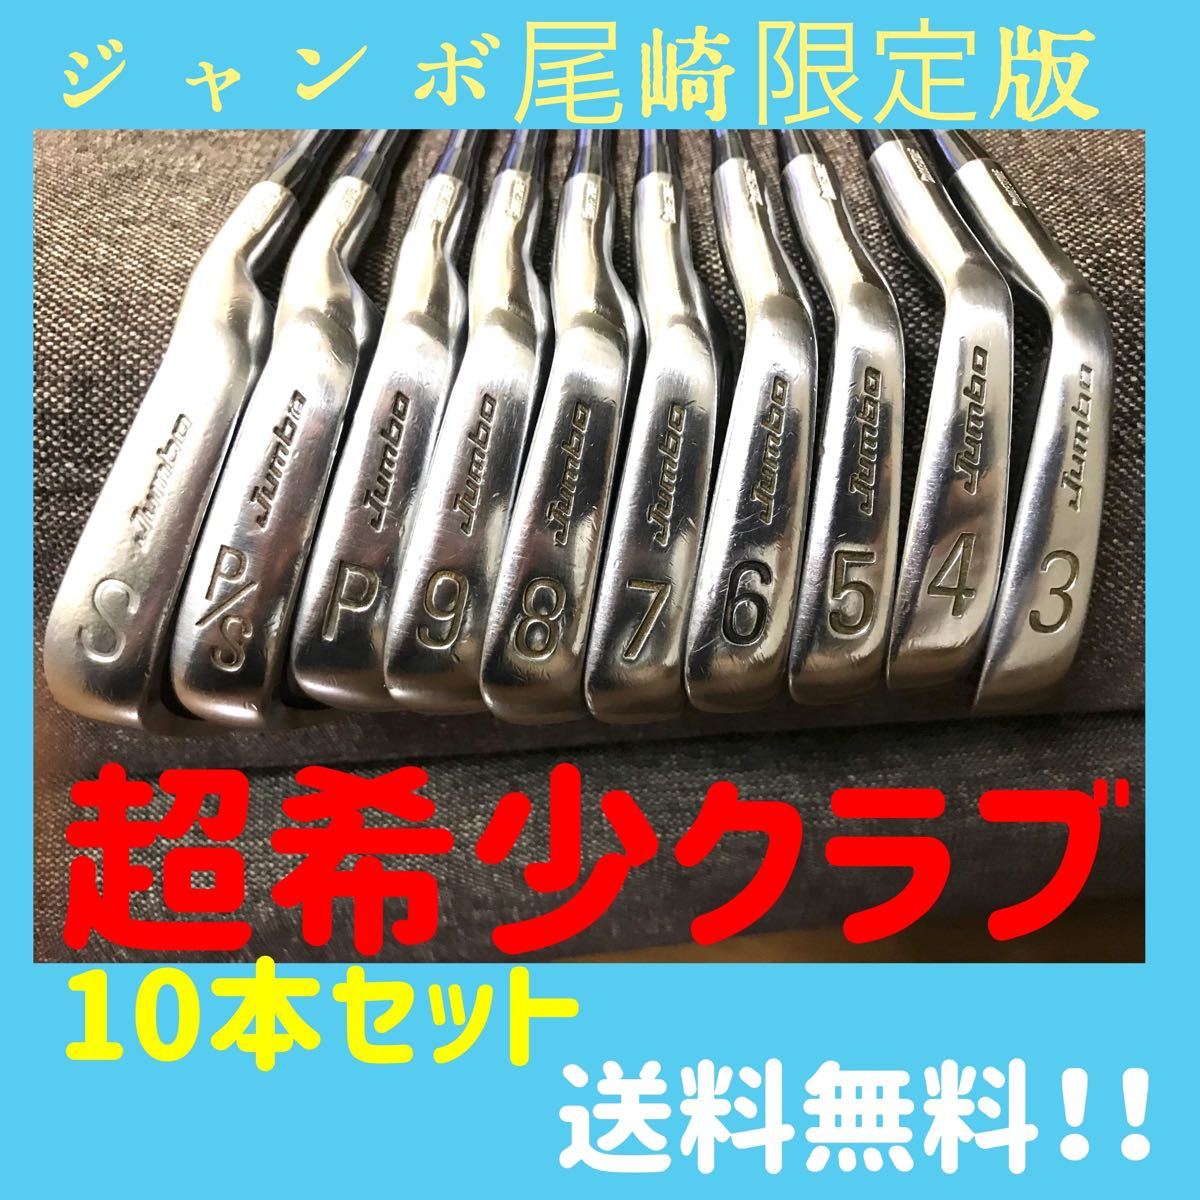 ジャンボ尾崎ゴルフクラブJ'sチタンマッスル限定版 HM-80 10本セット 